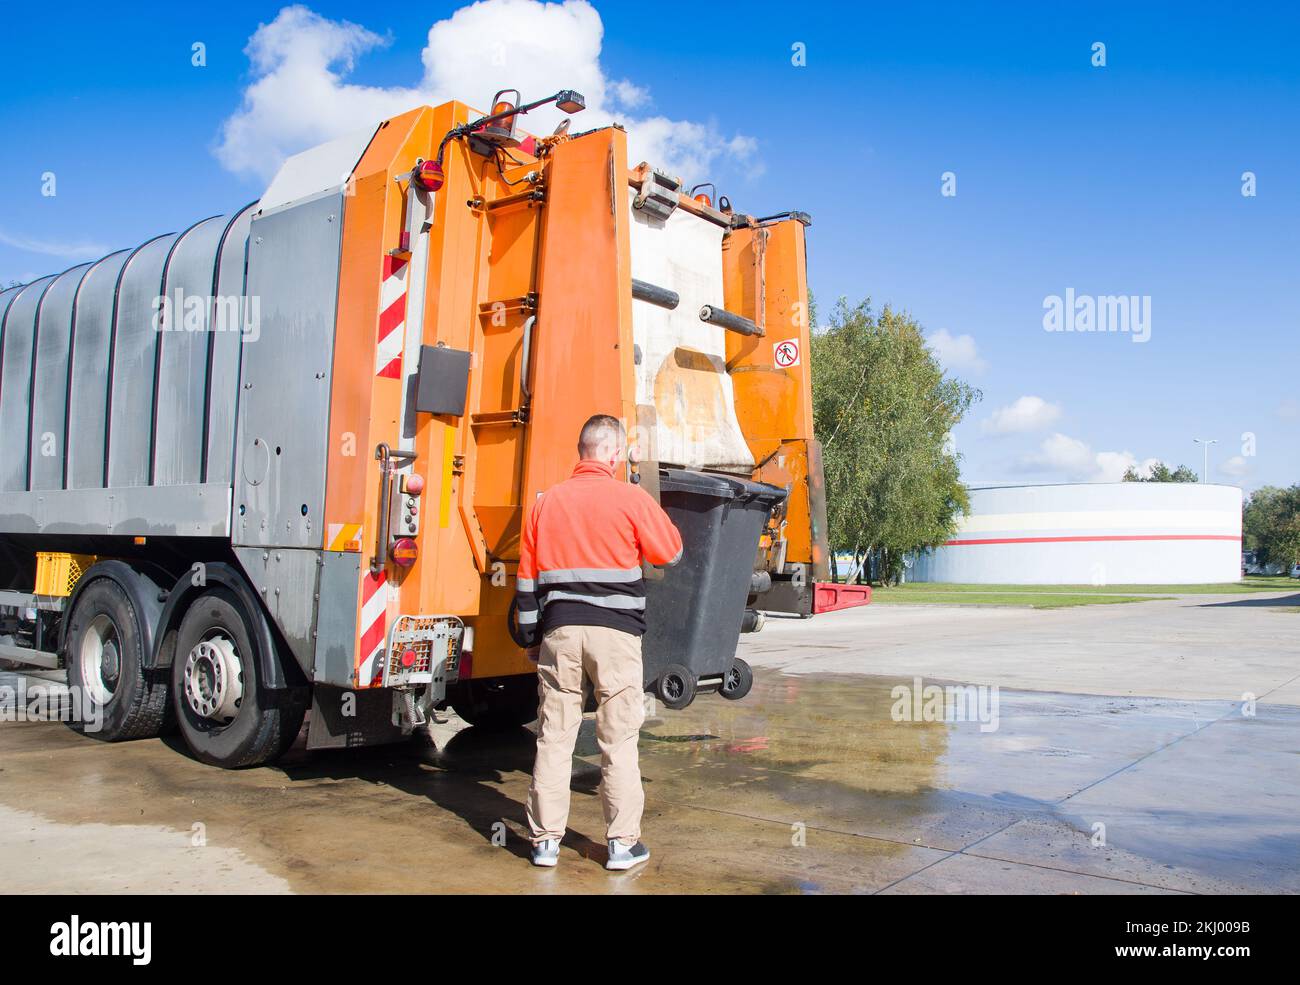 Trabajador de reciclaje urbano municipal camioneta de recogida de basura cargando residuos y basurero Foto de stock